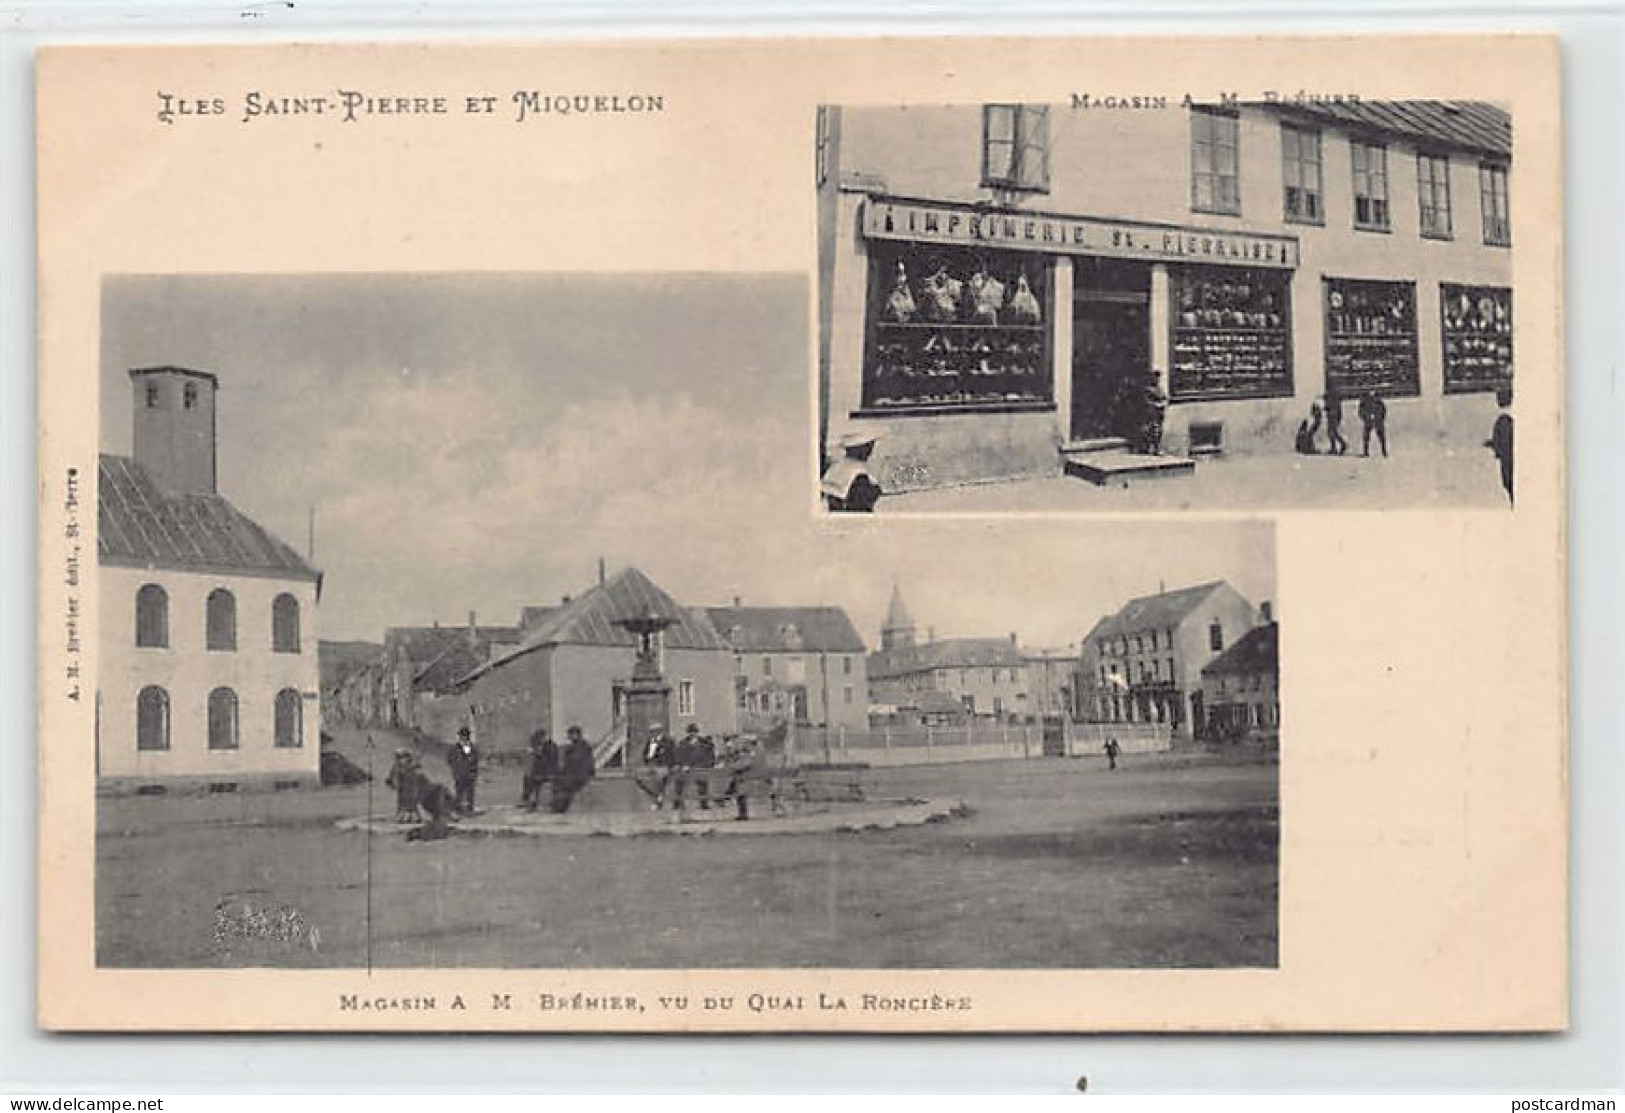 SAINT-PIERRE - Magasin A. M. Brehier, Vu Du Quai De La Roncière - CARTE PUBLICITAIRE - Ed. A. M. Bréhier  - Saint-Pierre E Miquelon